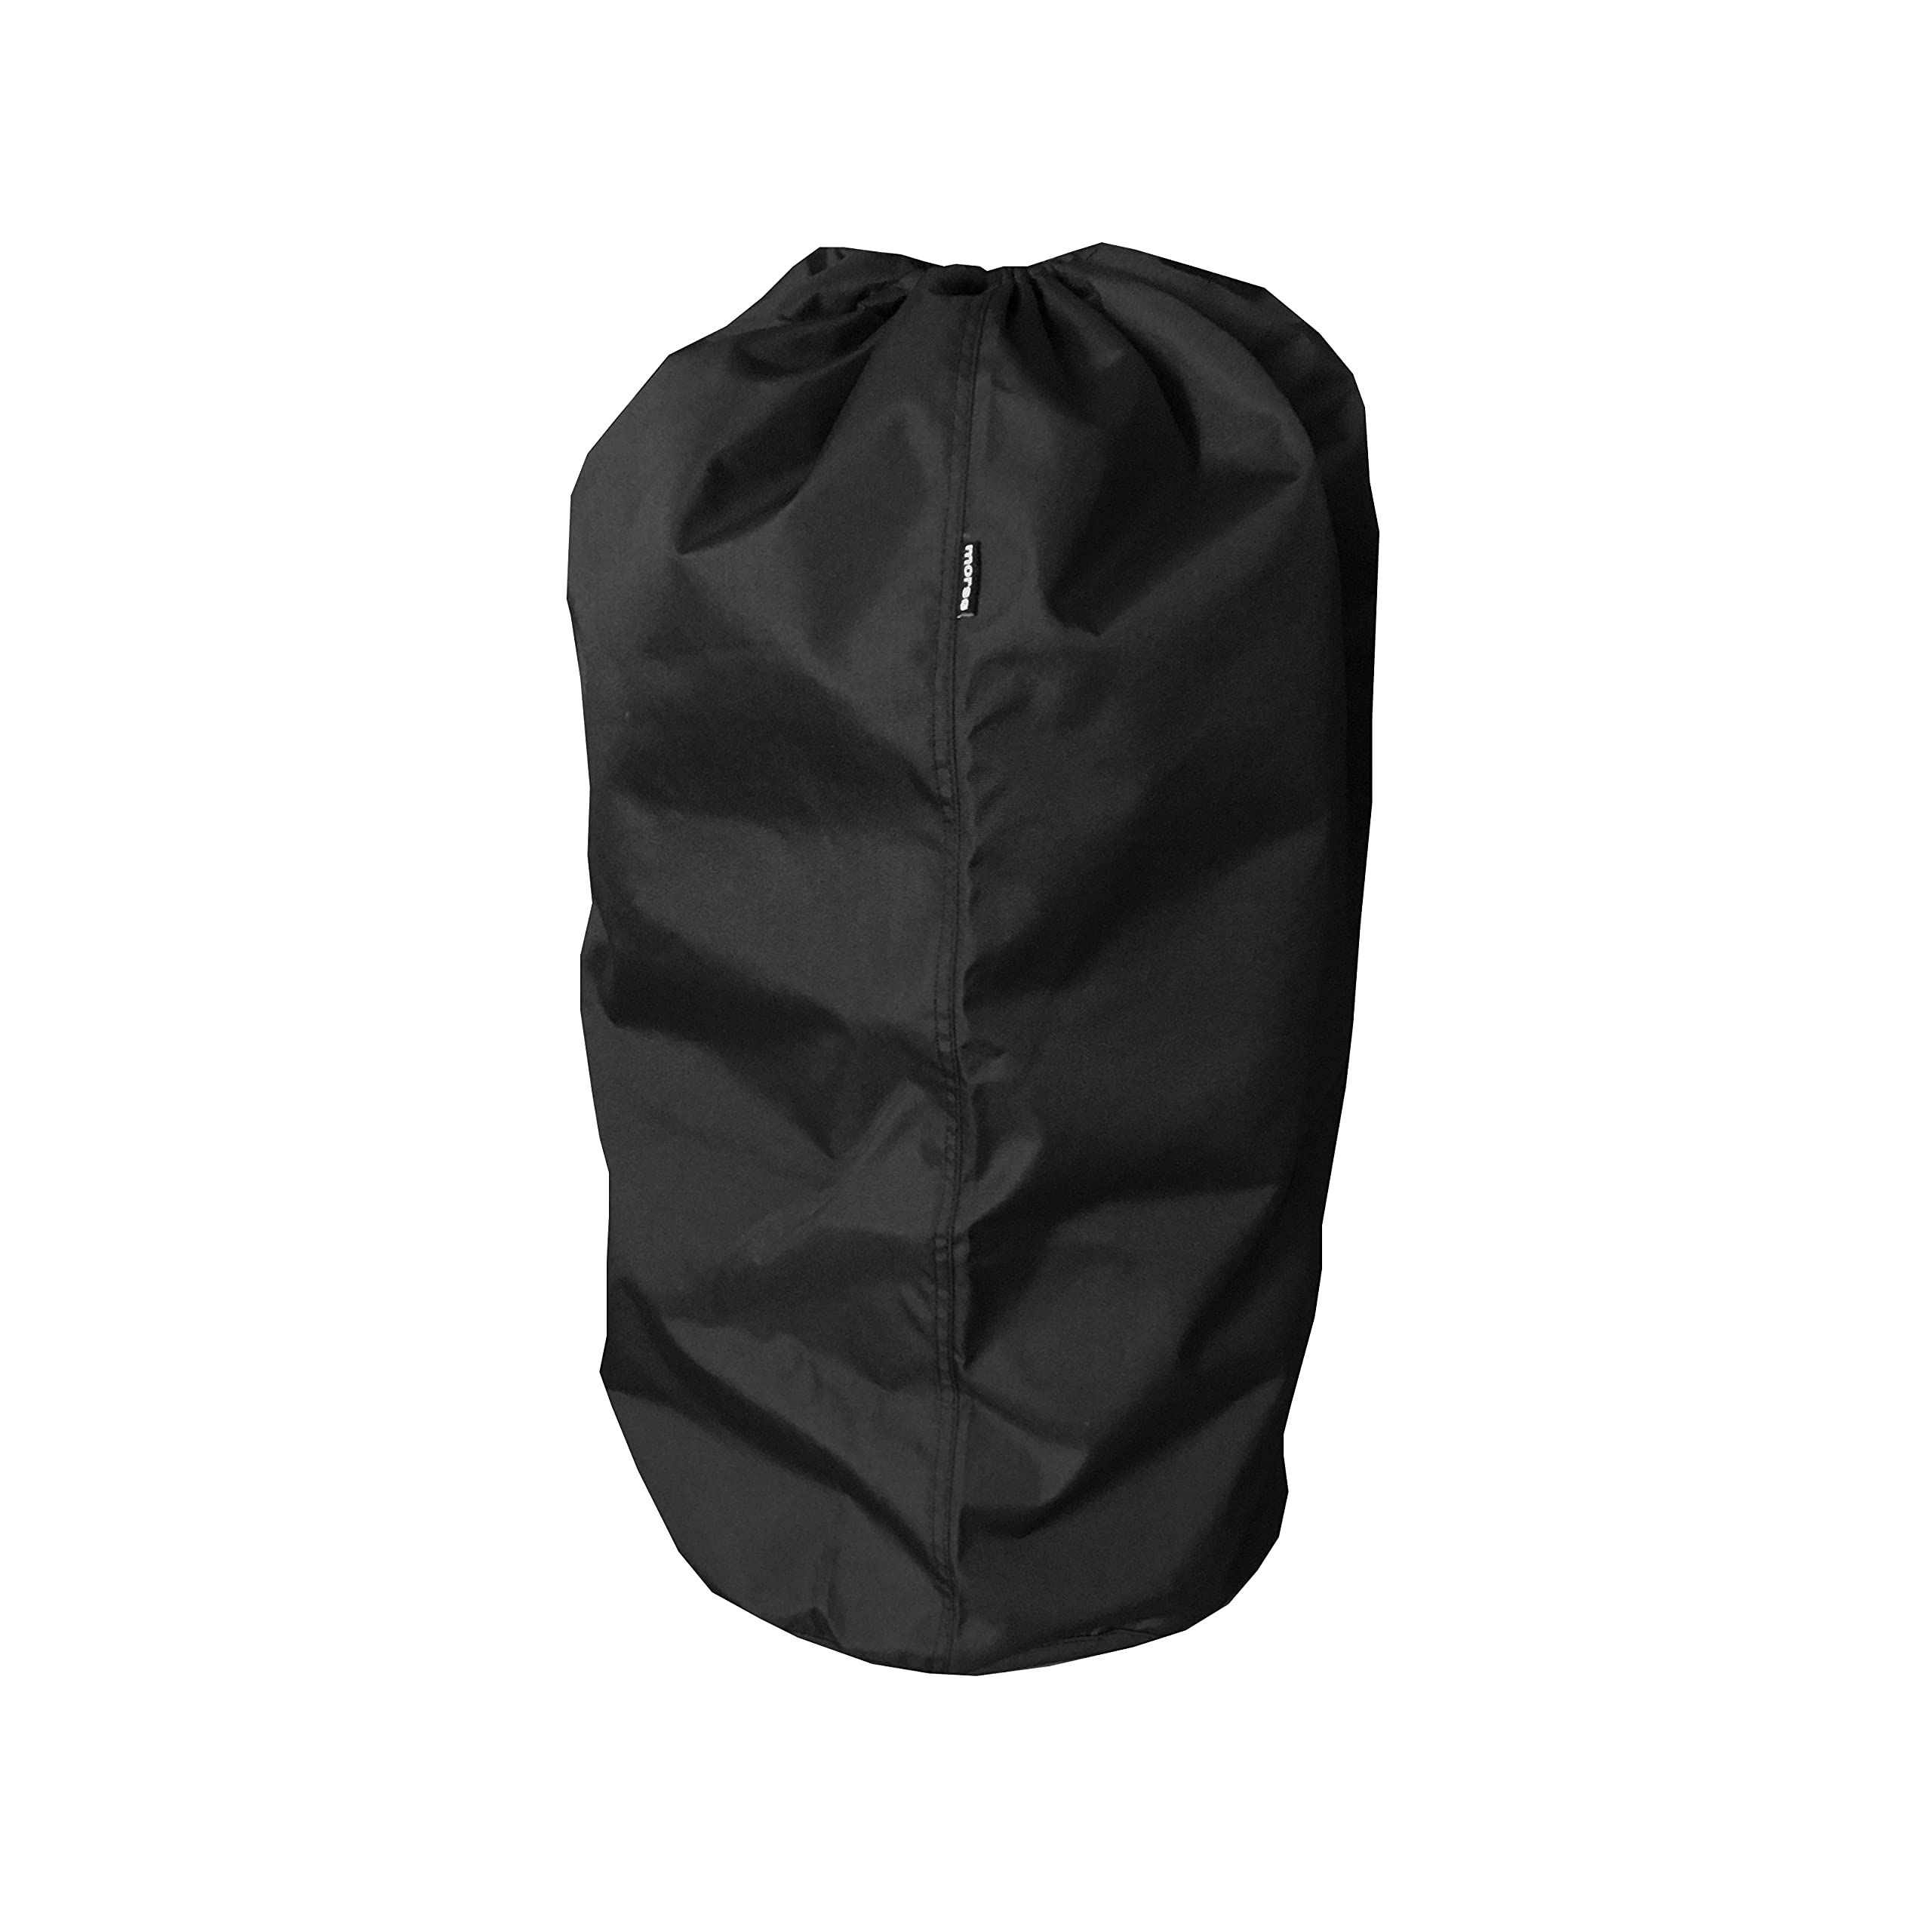 Morsø Gasflasche Cover – Gasflaschen-Abdeckung aus wasserabweisendem Polyester, Hülle für Gasflasche, im cleanen Design, Schwarz